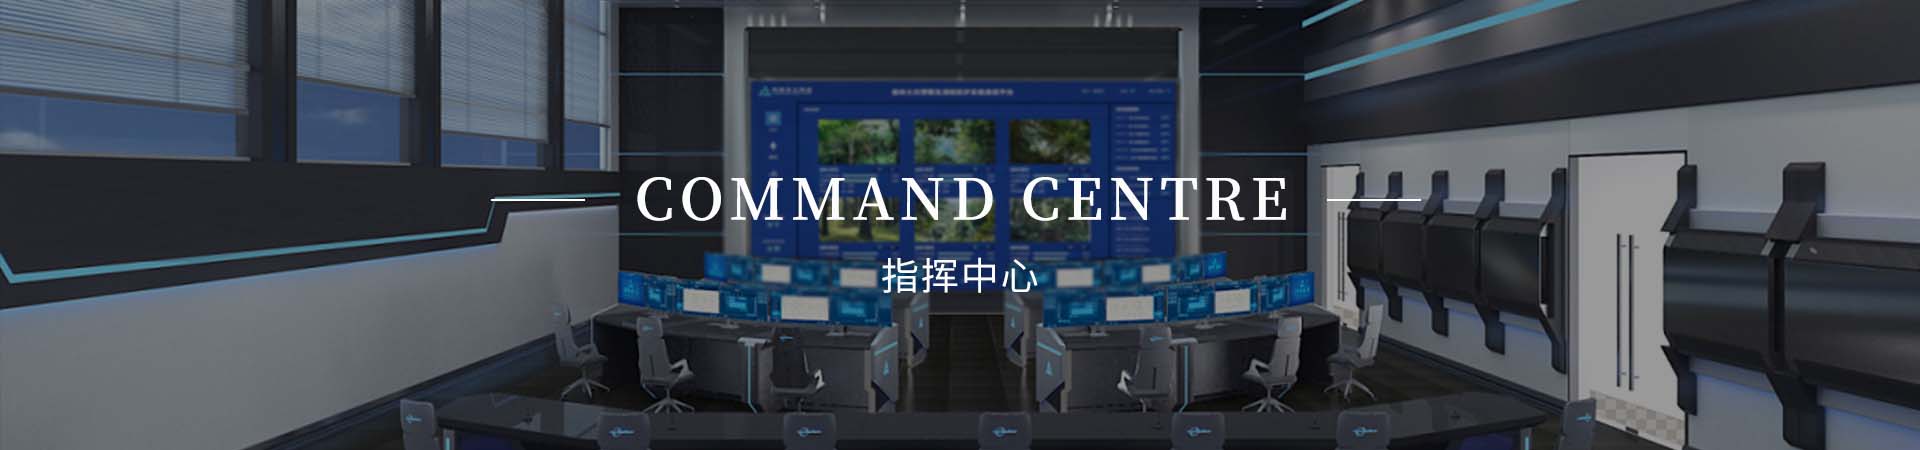 重庆数据指挥中心解决方案公司